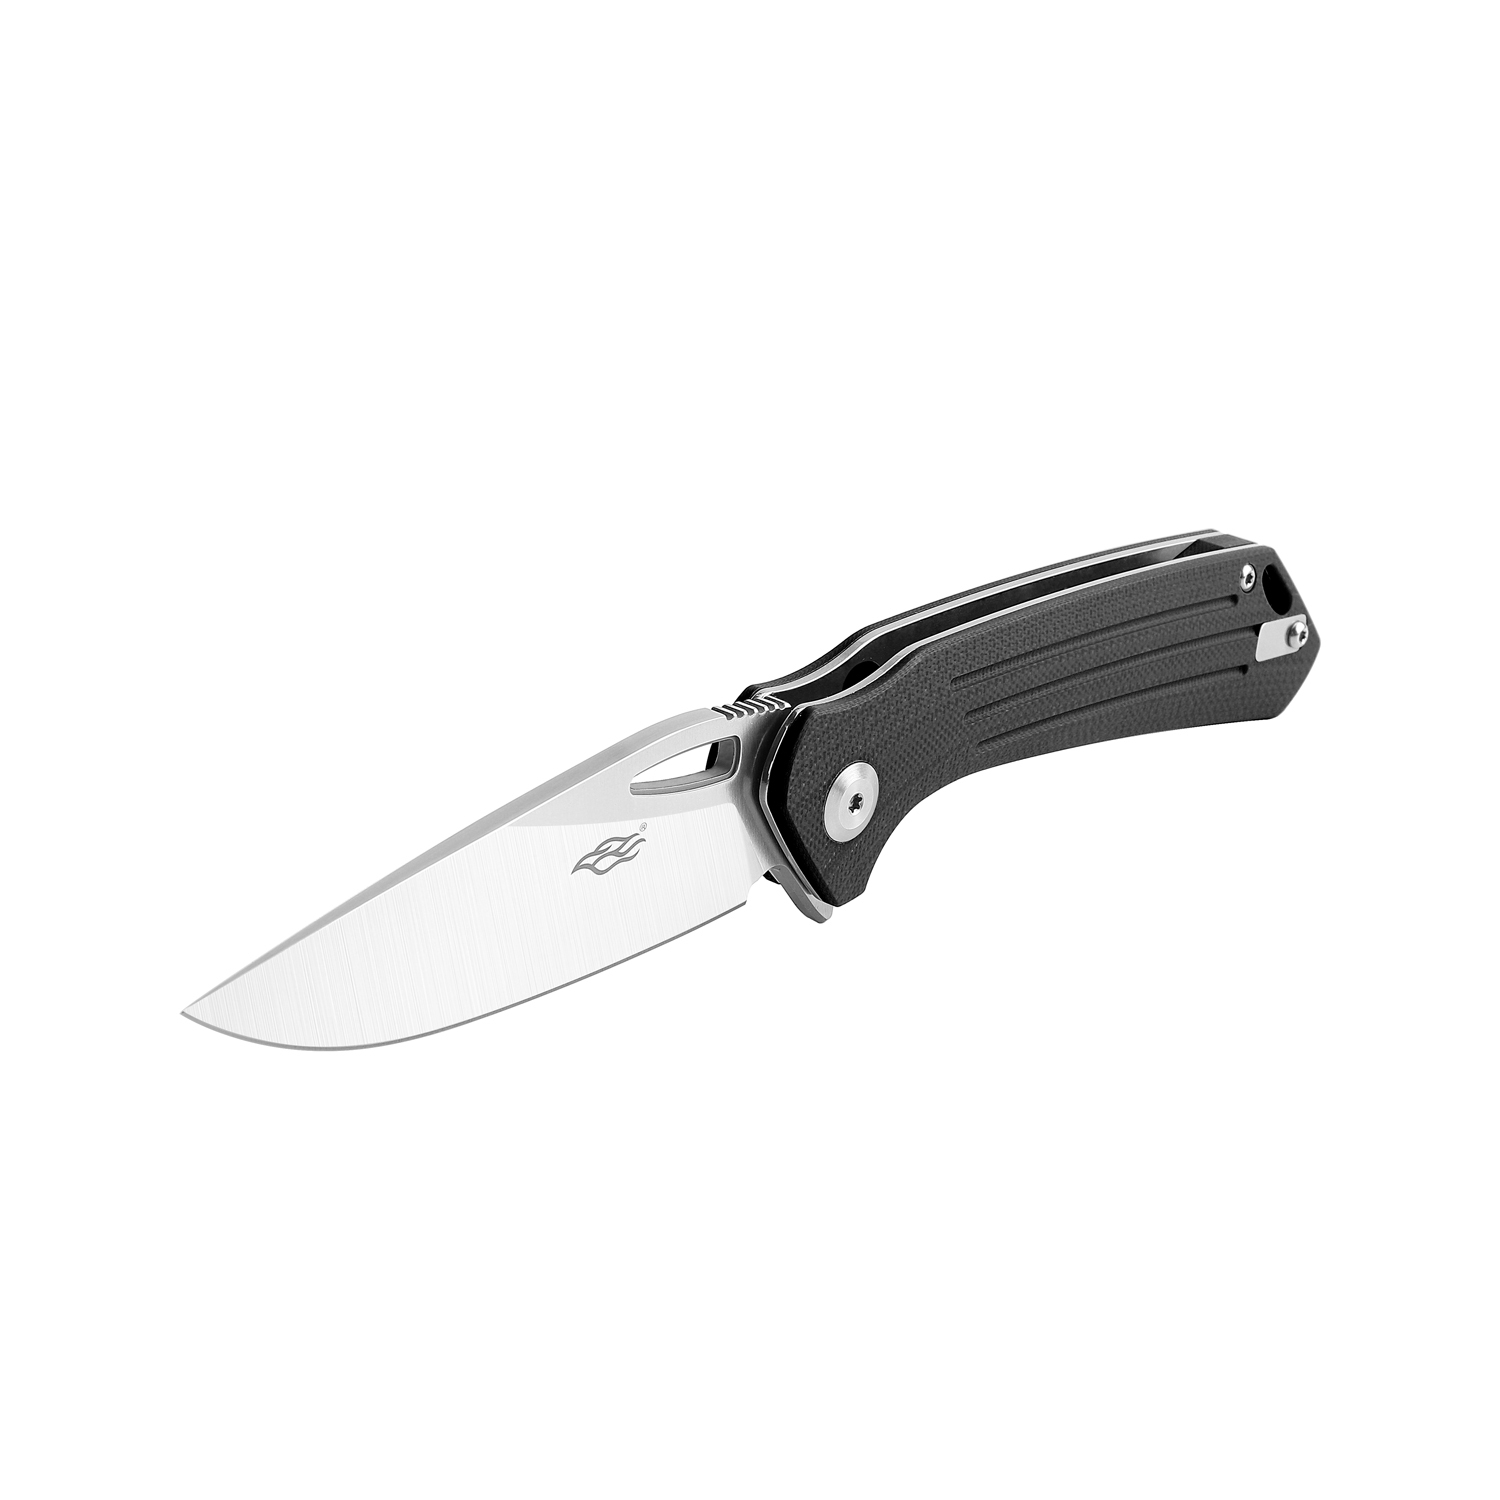 Складной нож Firebird FH921-BK, сталь D2, рукоять G10 черная - фото 4